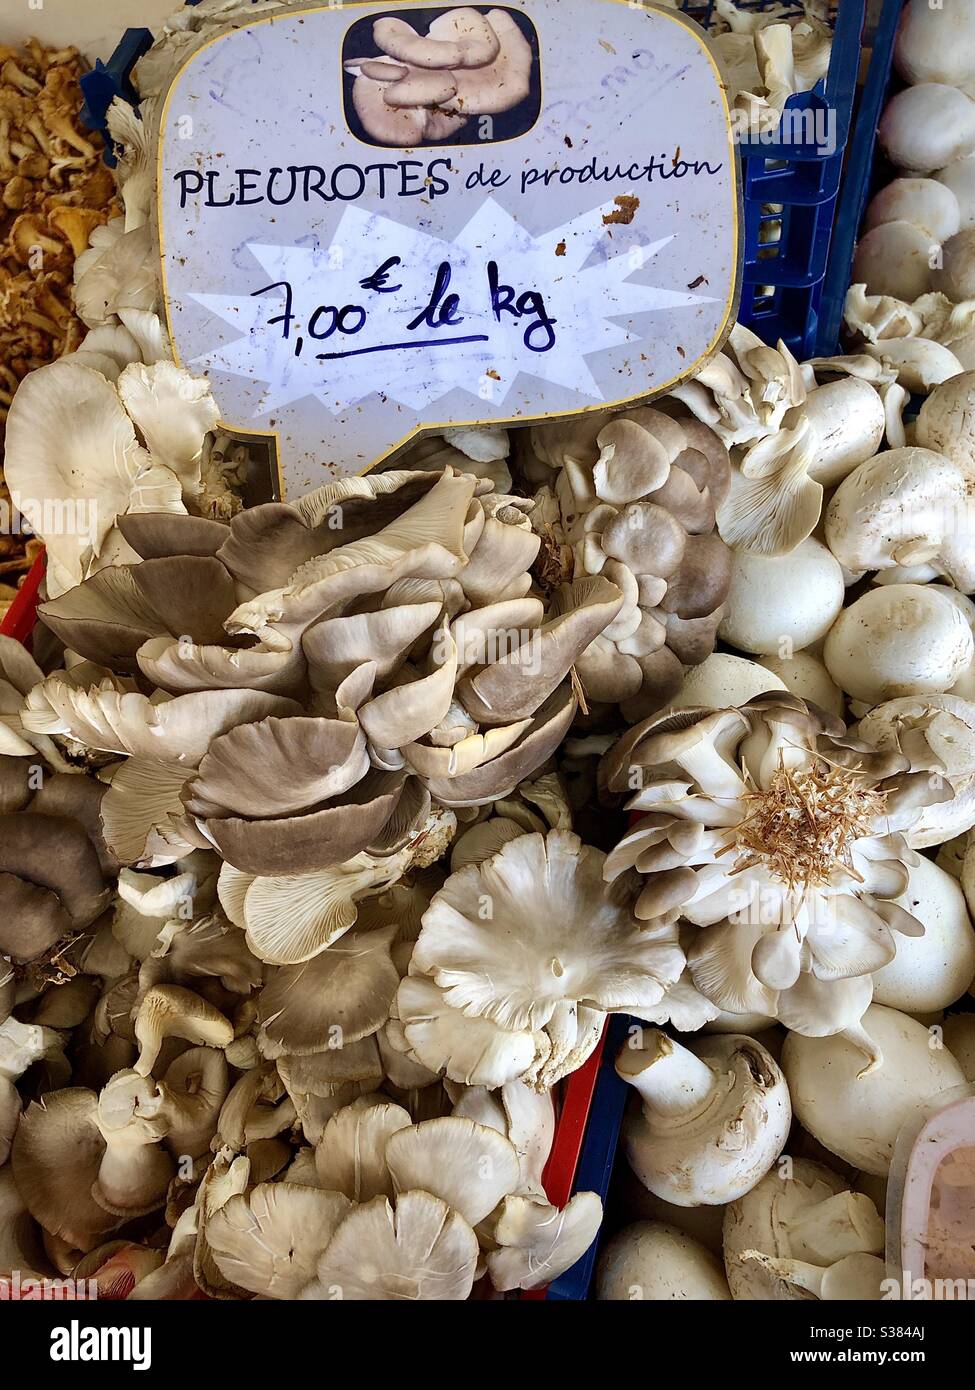 Pleurotes Pilze zum Verkauf auf dem französischen Marktstand - Le Blanc, Indre, Frankreich. Stockfoto